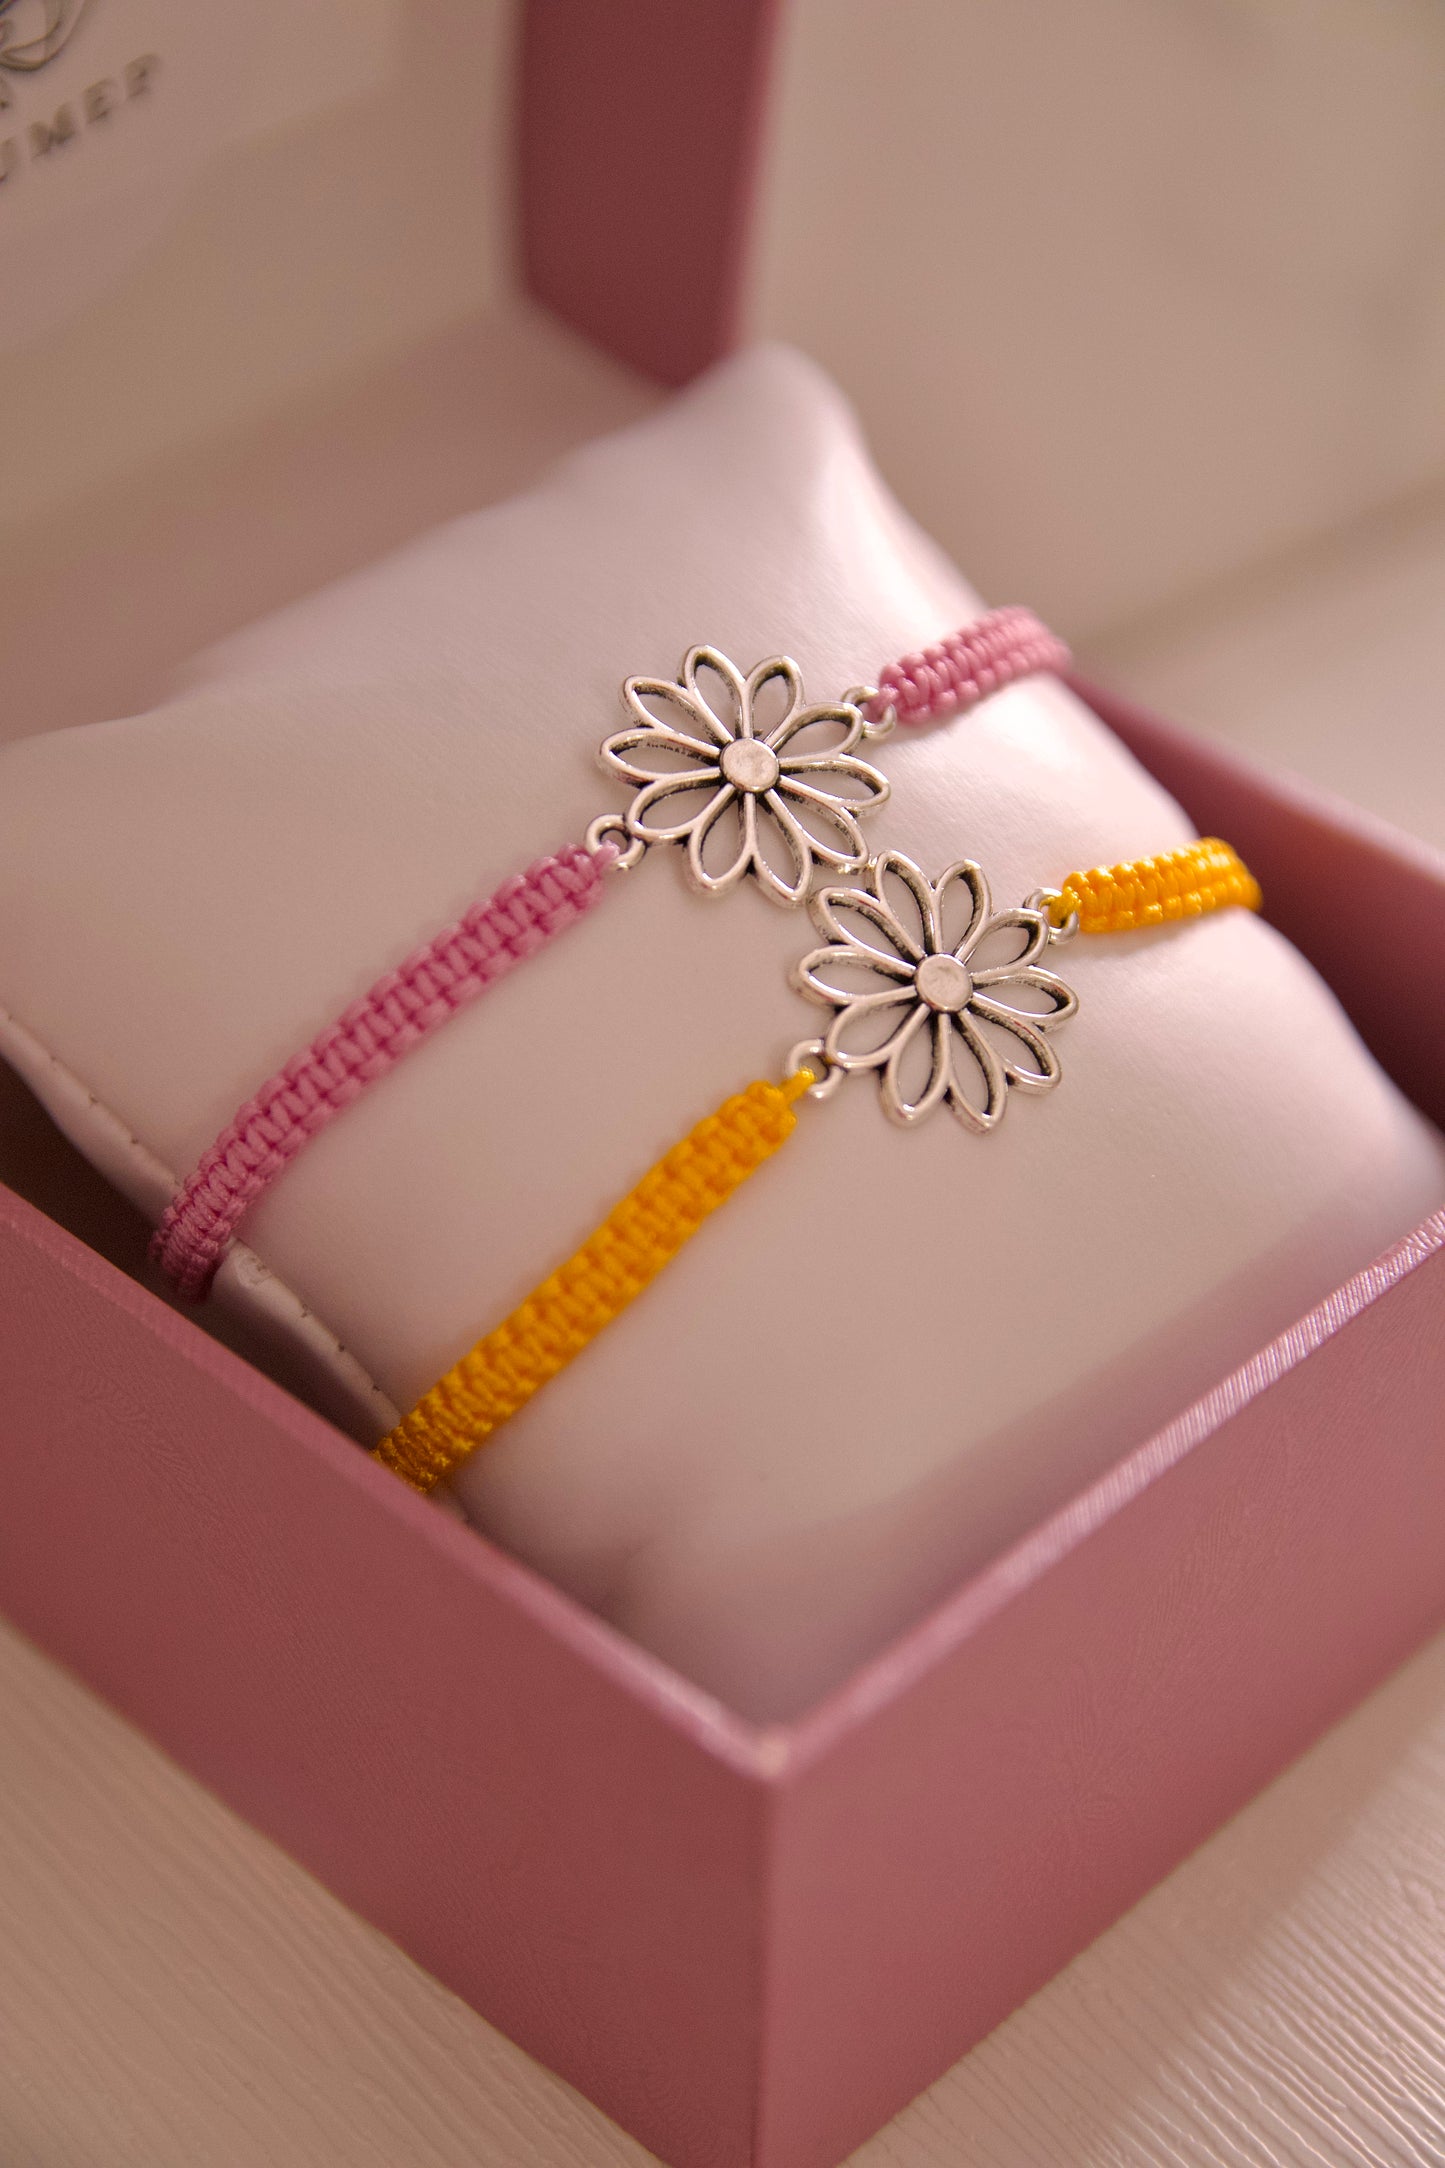 Sunflower bracelet